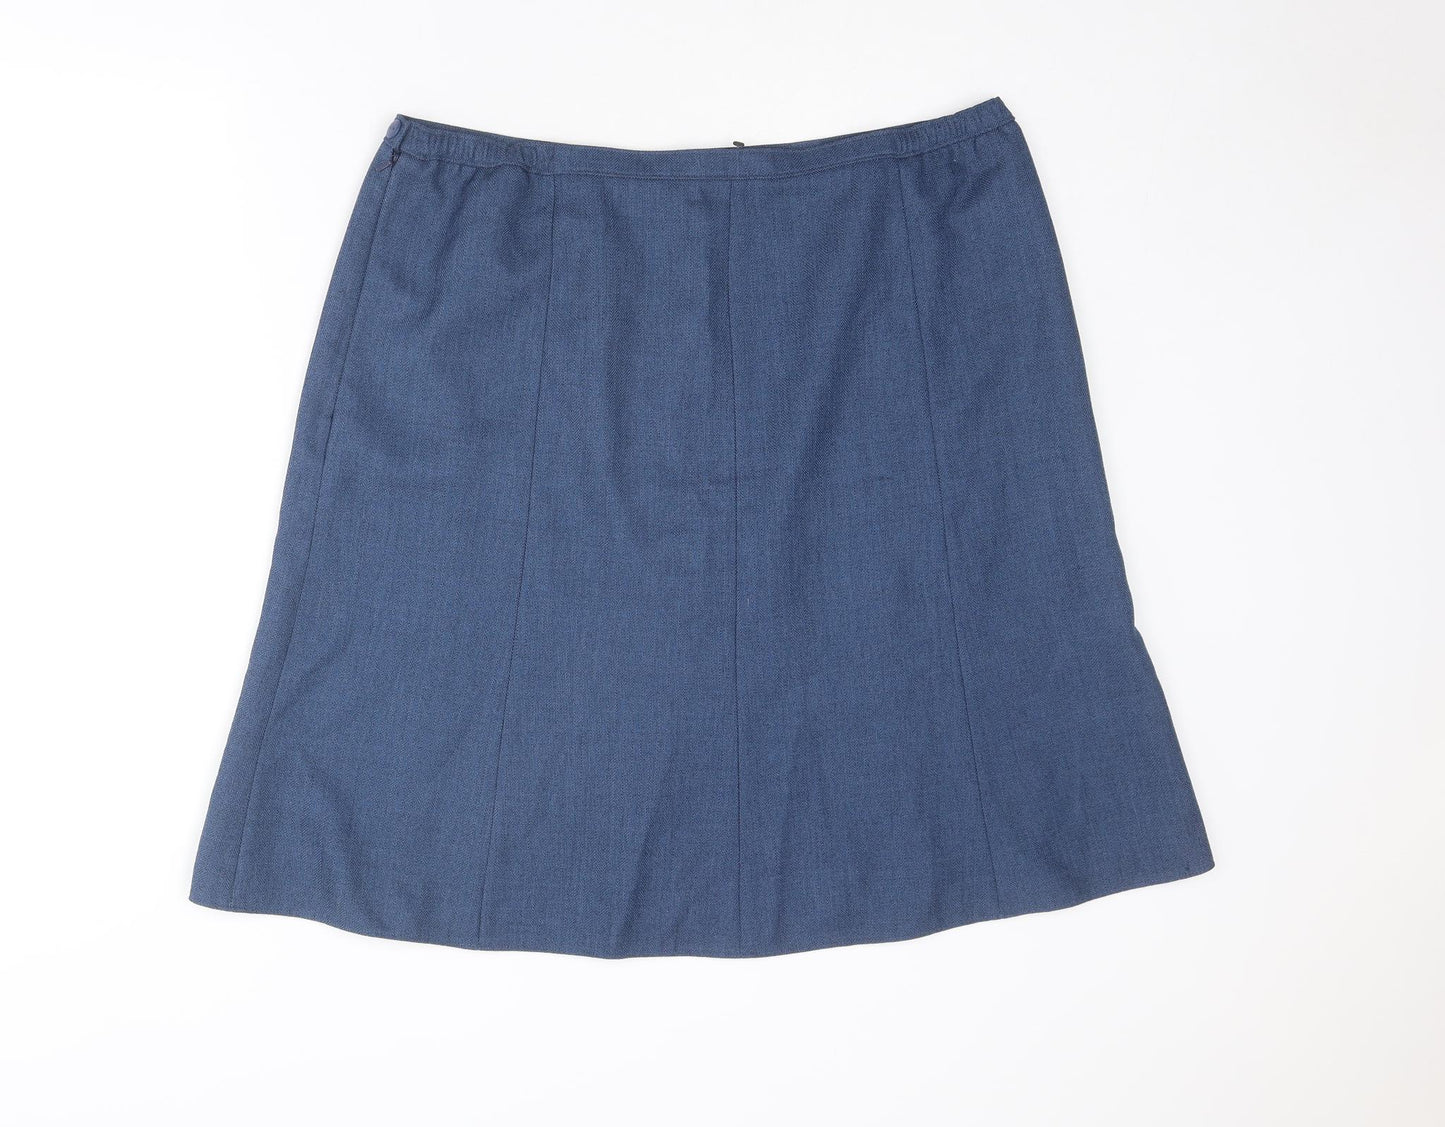 EWM Womens Blue Polyester A-Line Skirt Size 20 Zip